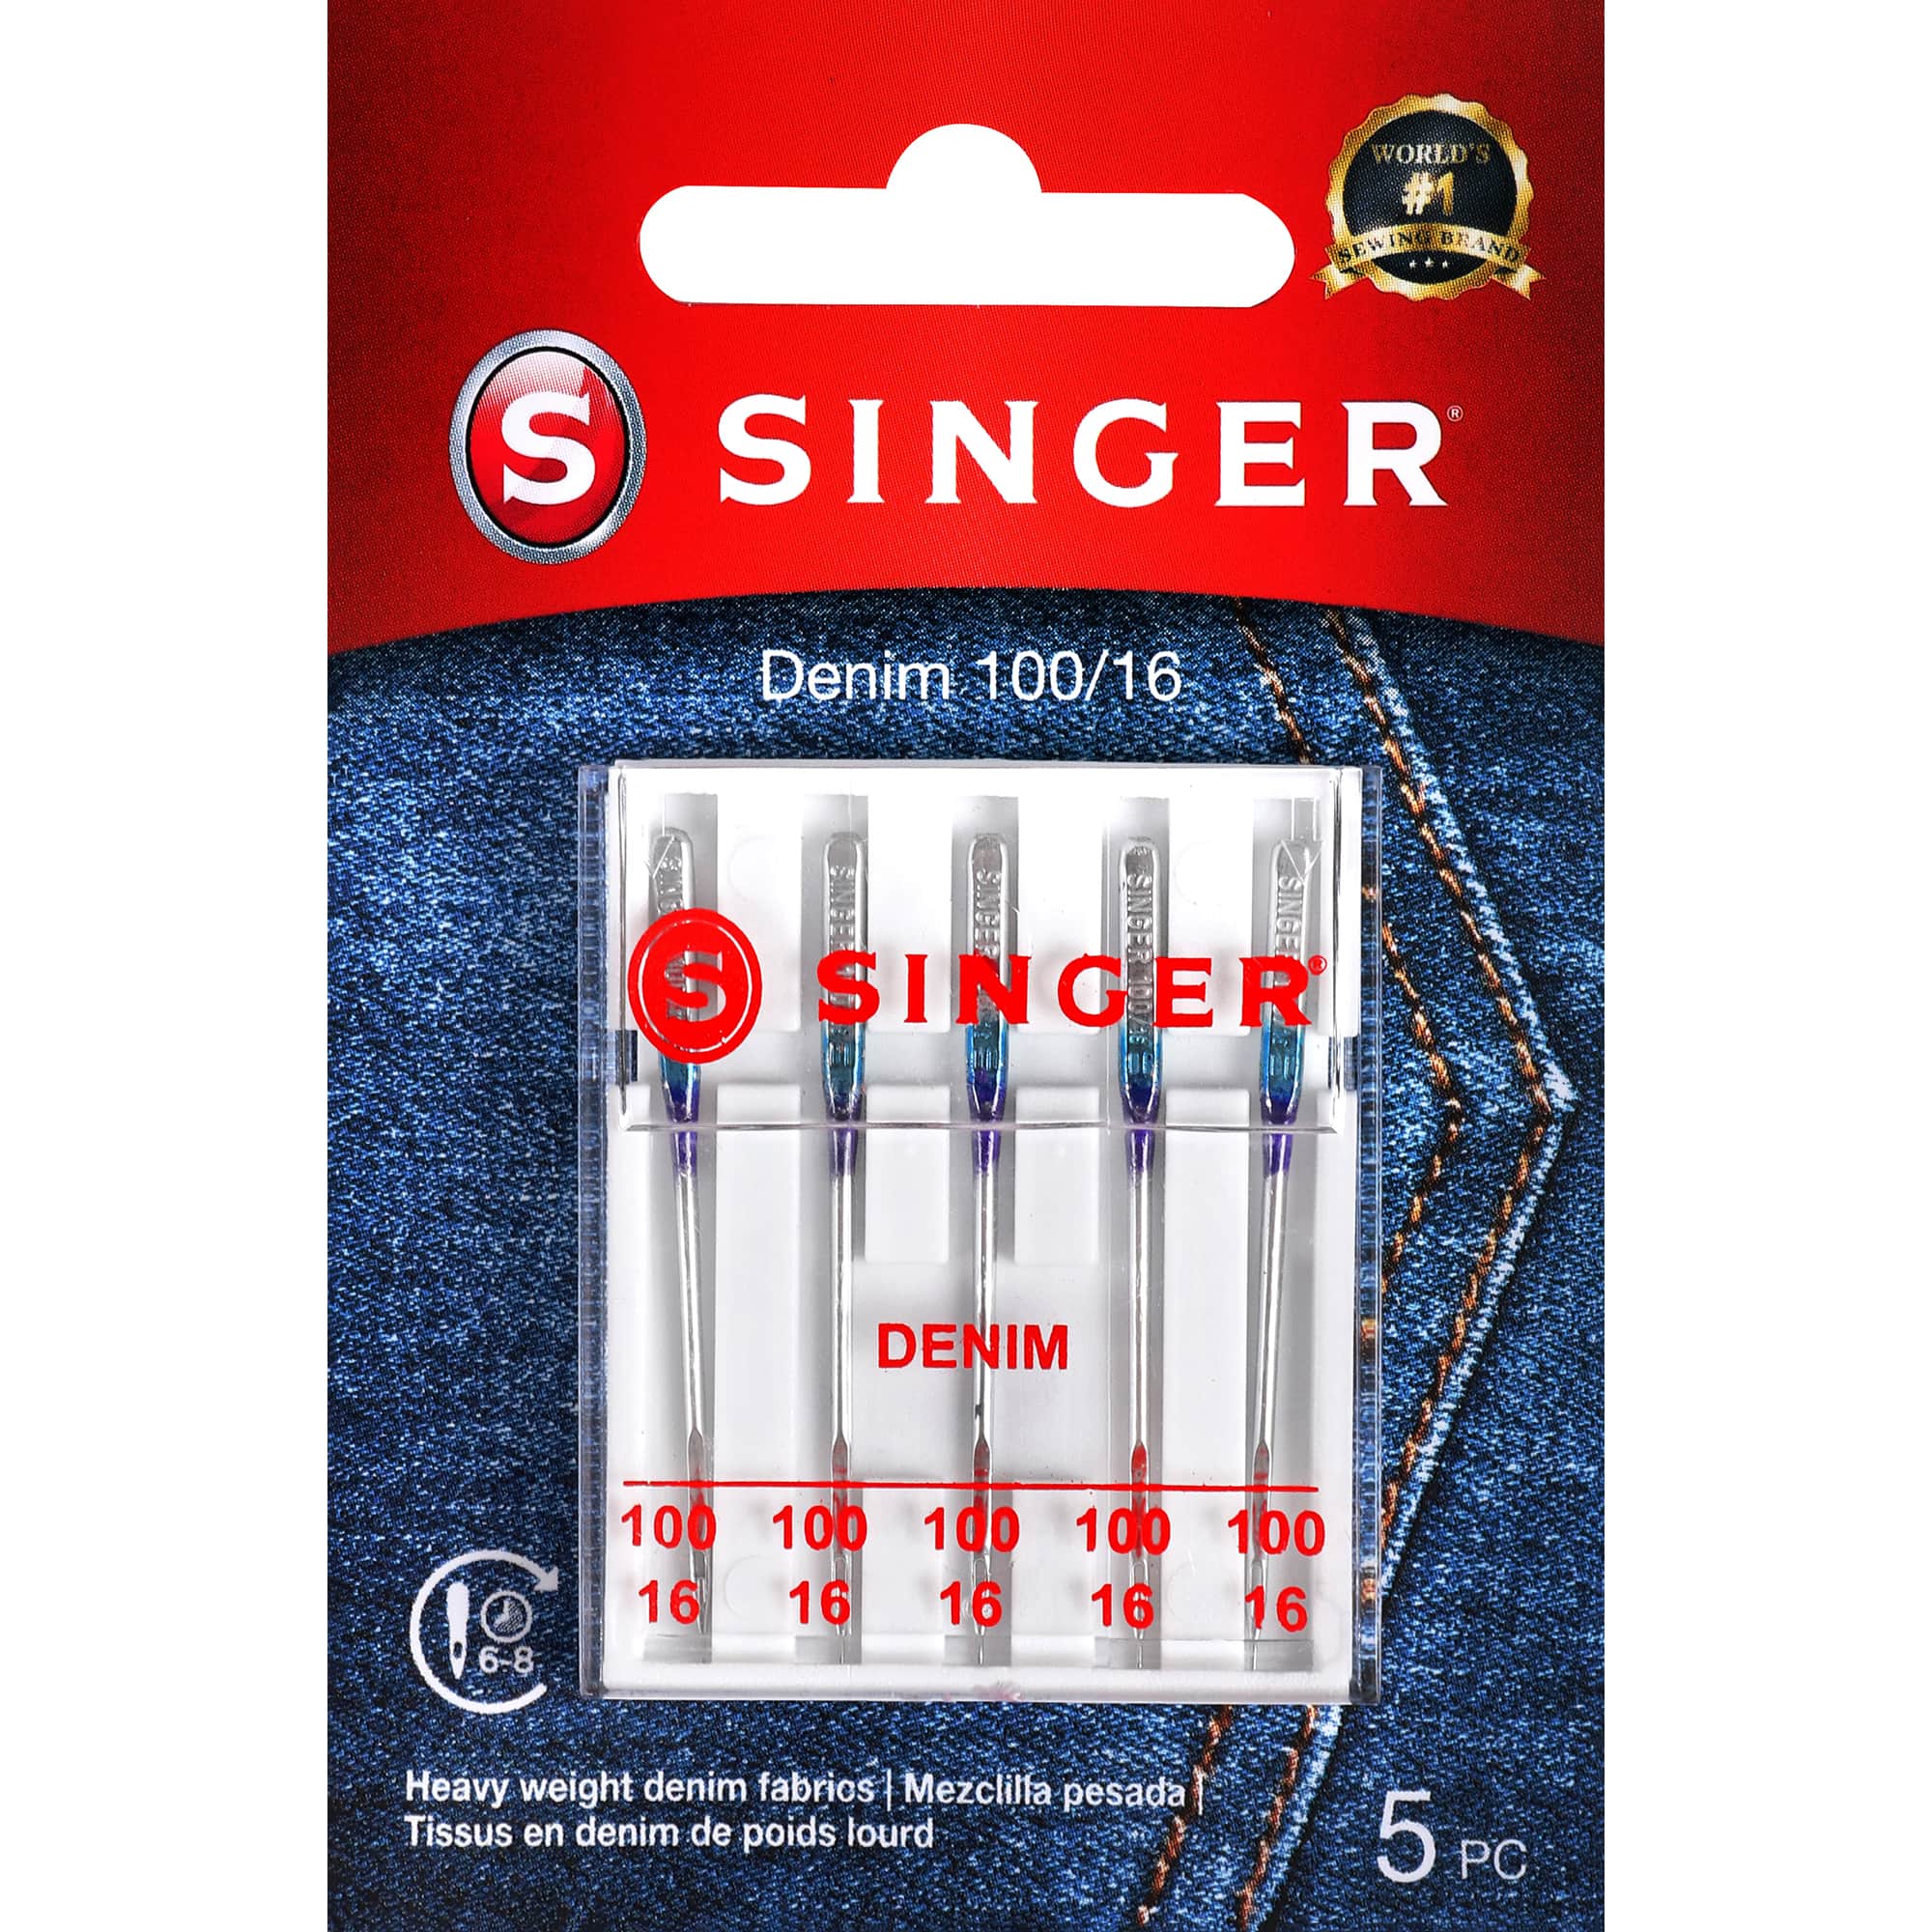 SINGER&#xAE; Size 100/16 Denim Sewing Machine Needles, 5ct.